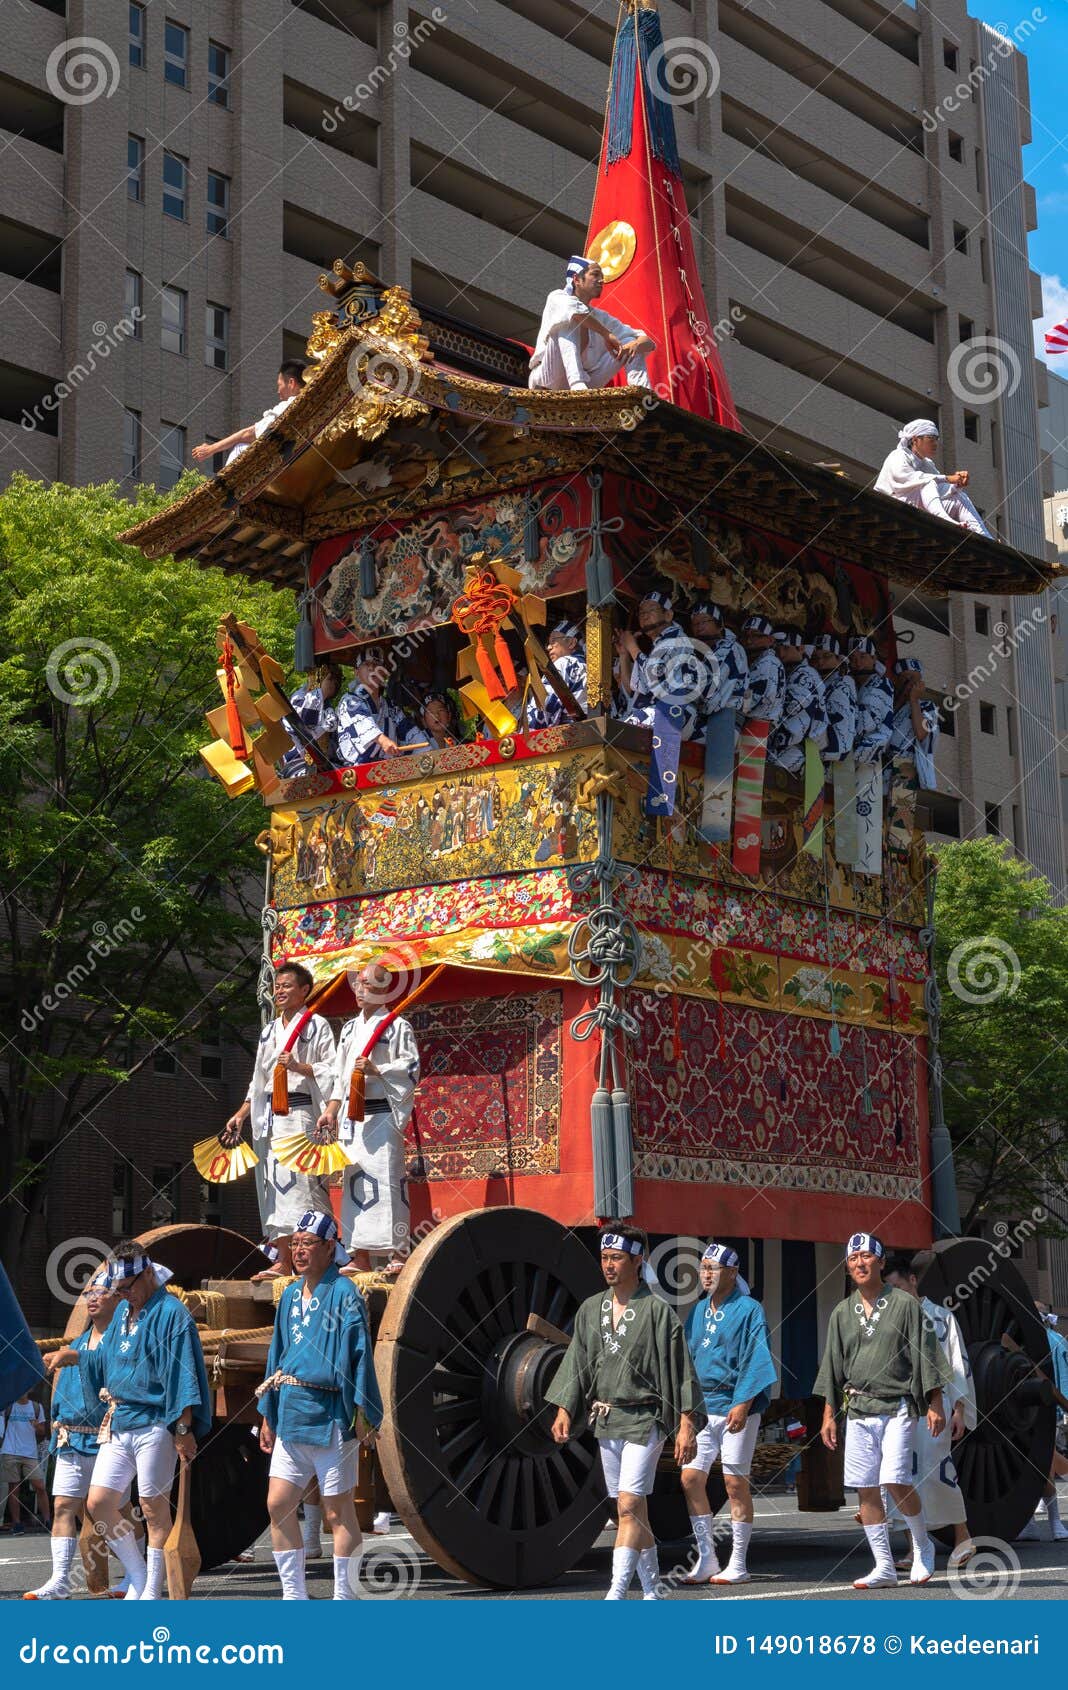 去日本旅游，有哪些当地传统节日庆典值得体验？ - 知乎